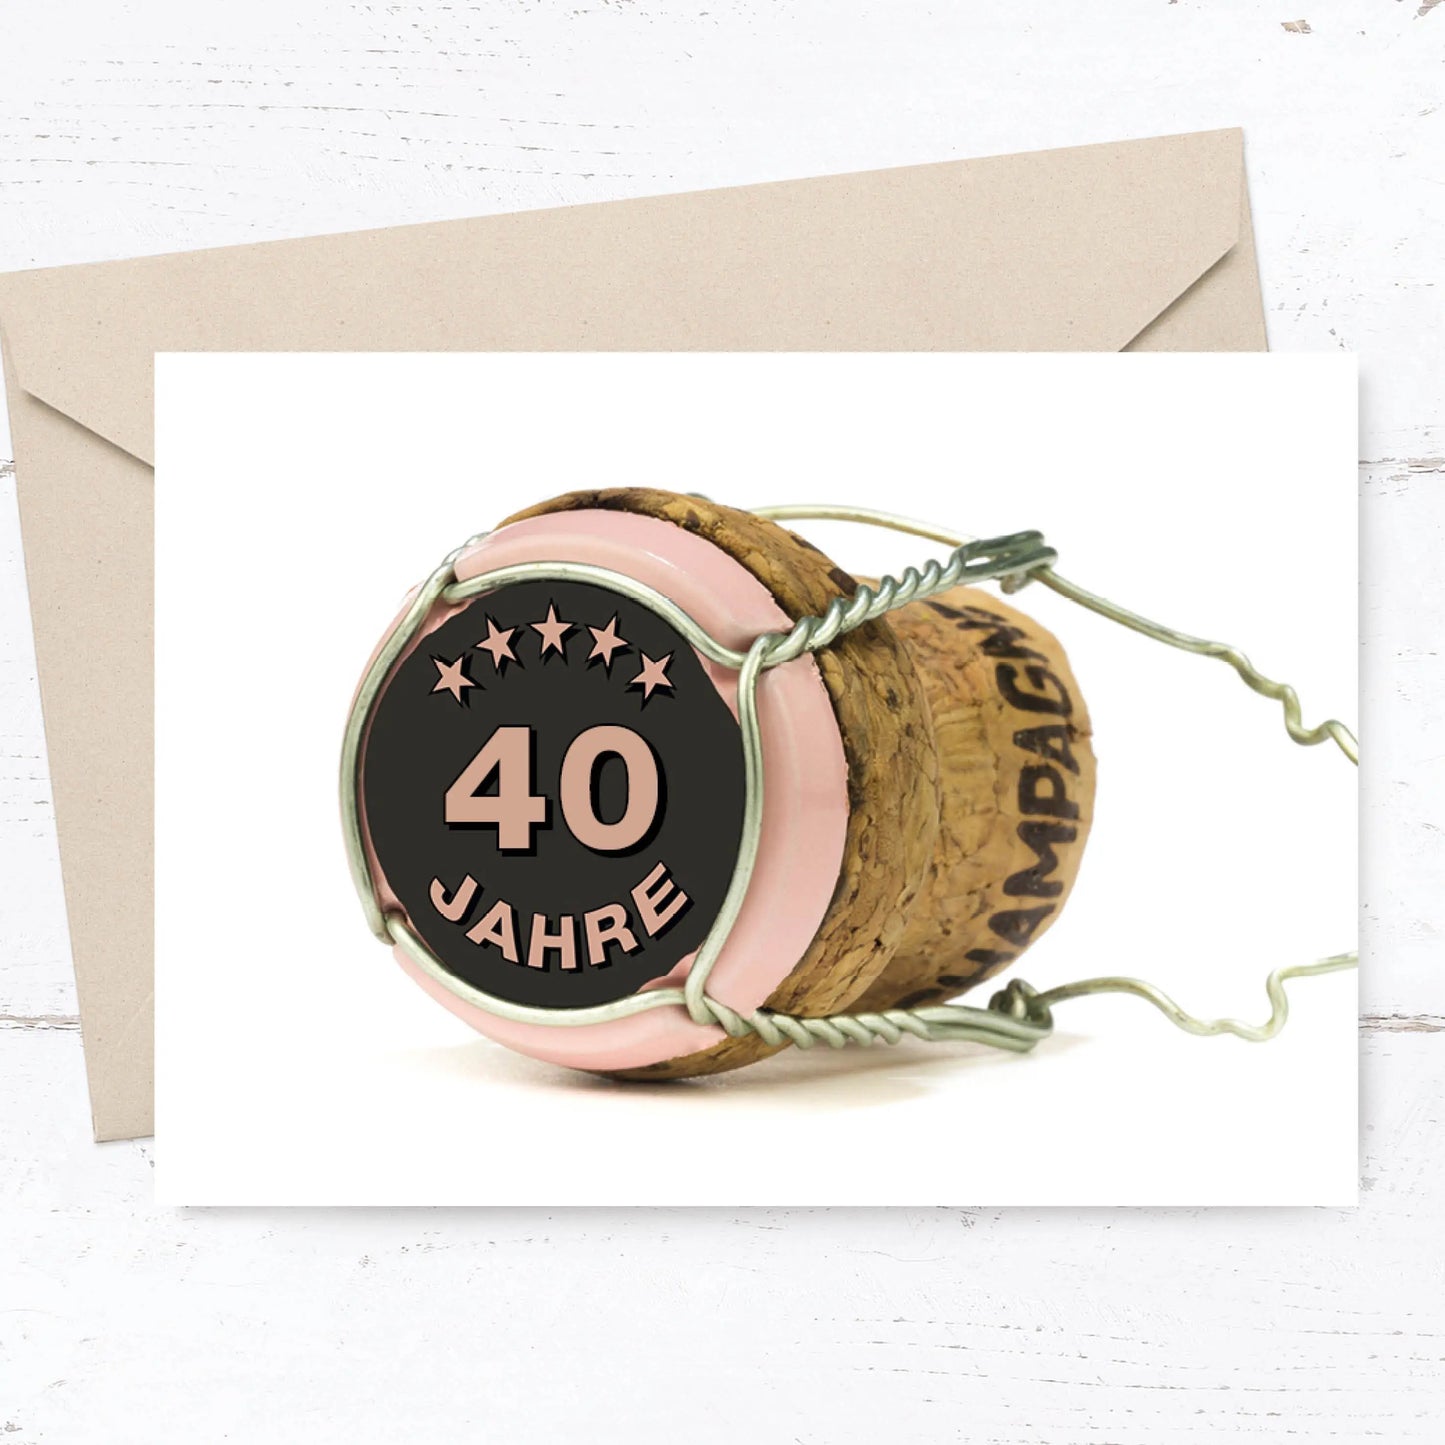 Einladung zum 40. Geburtstag: Bild von Champagner Korken